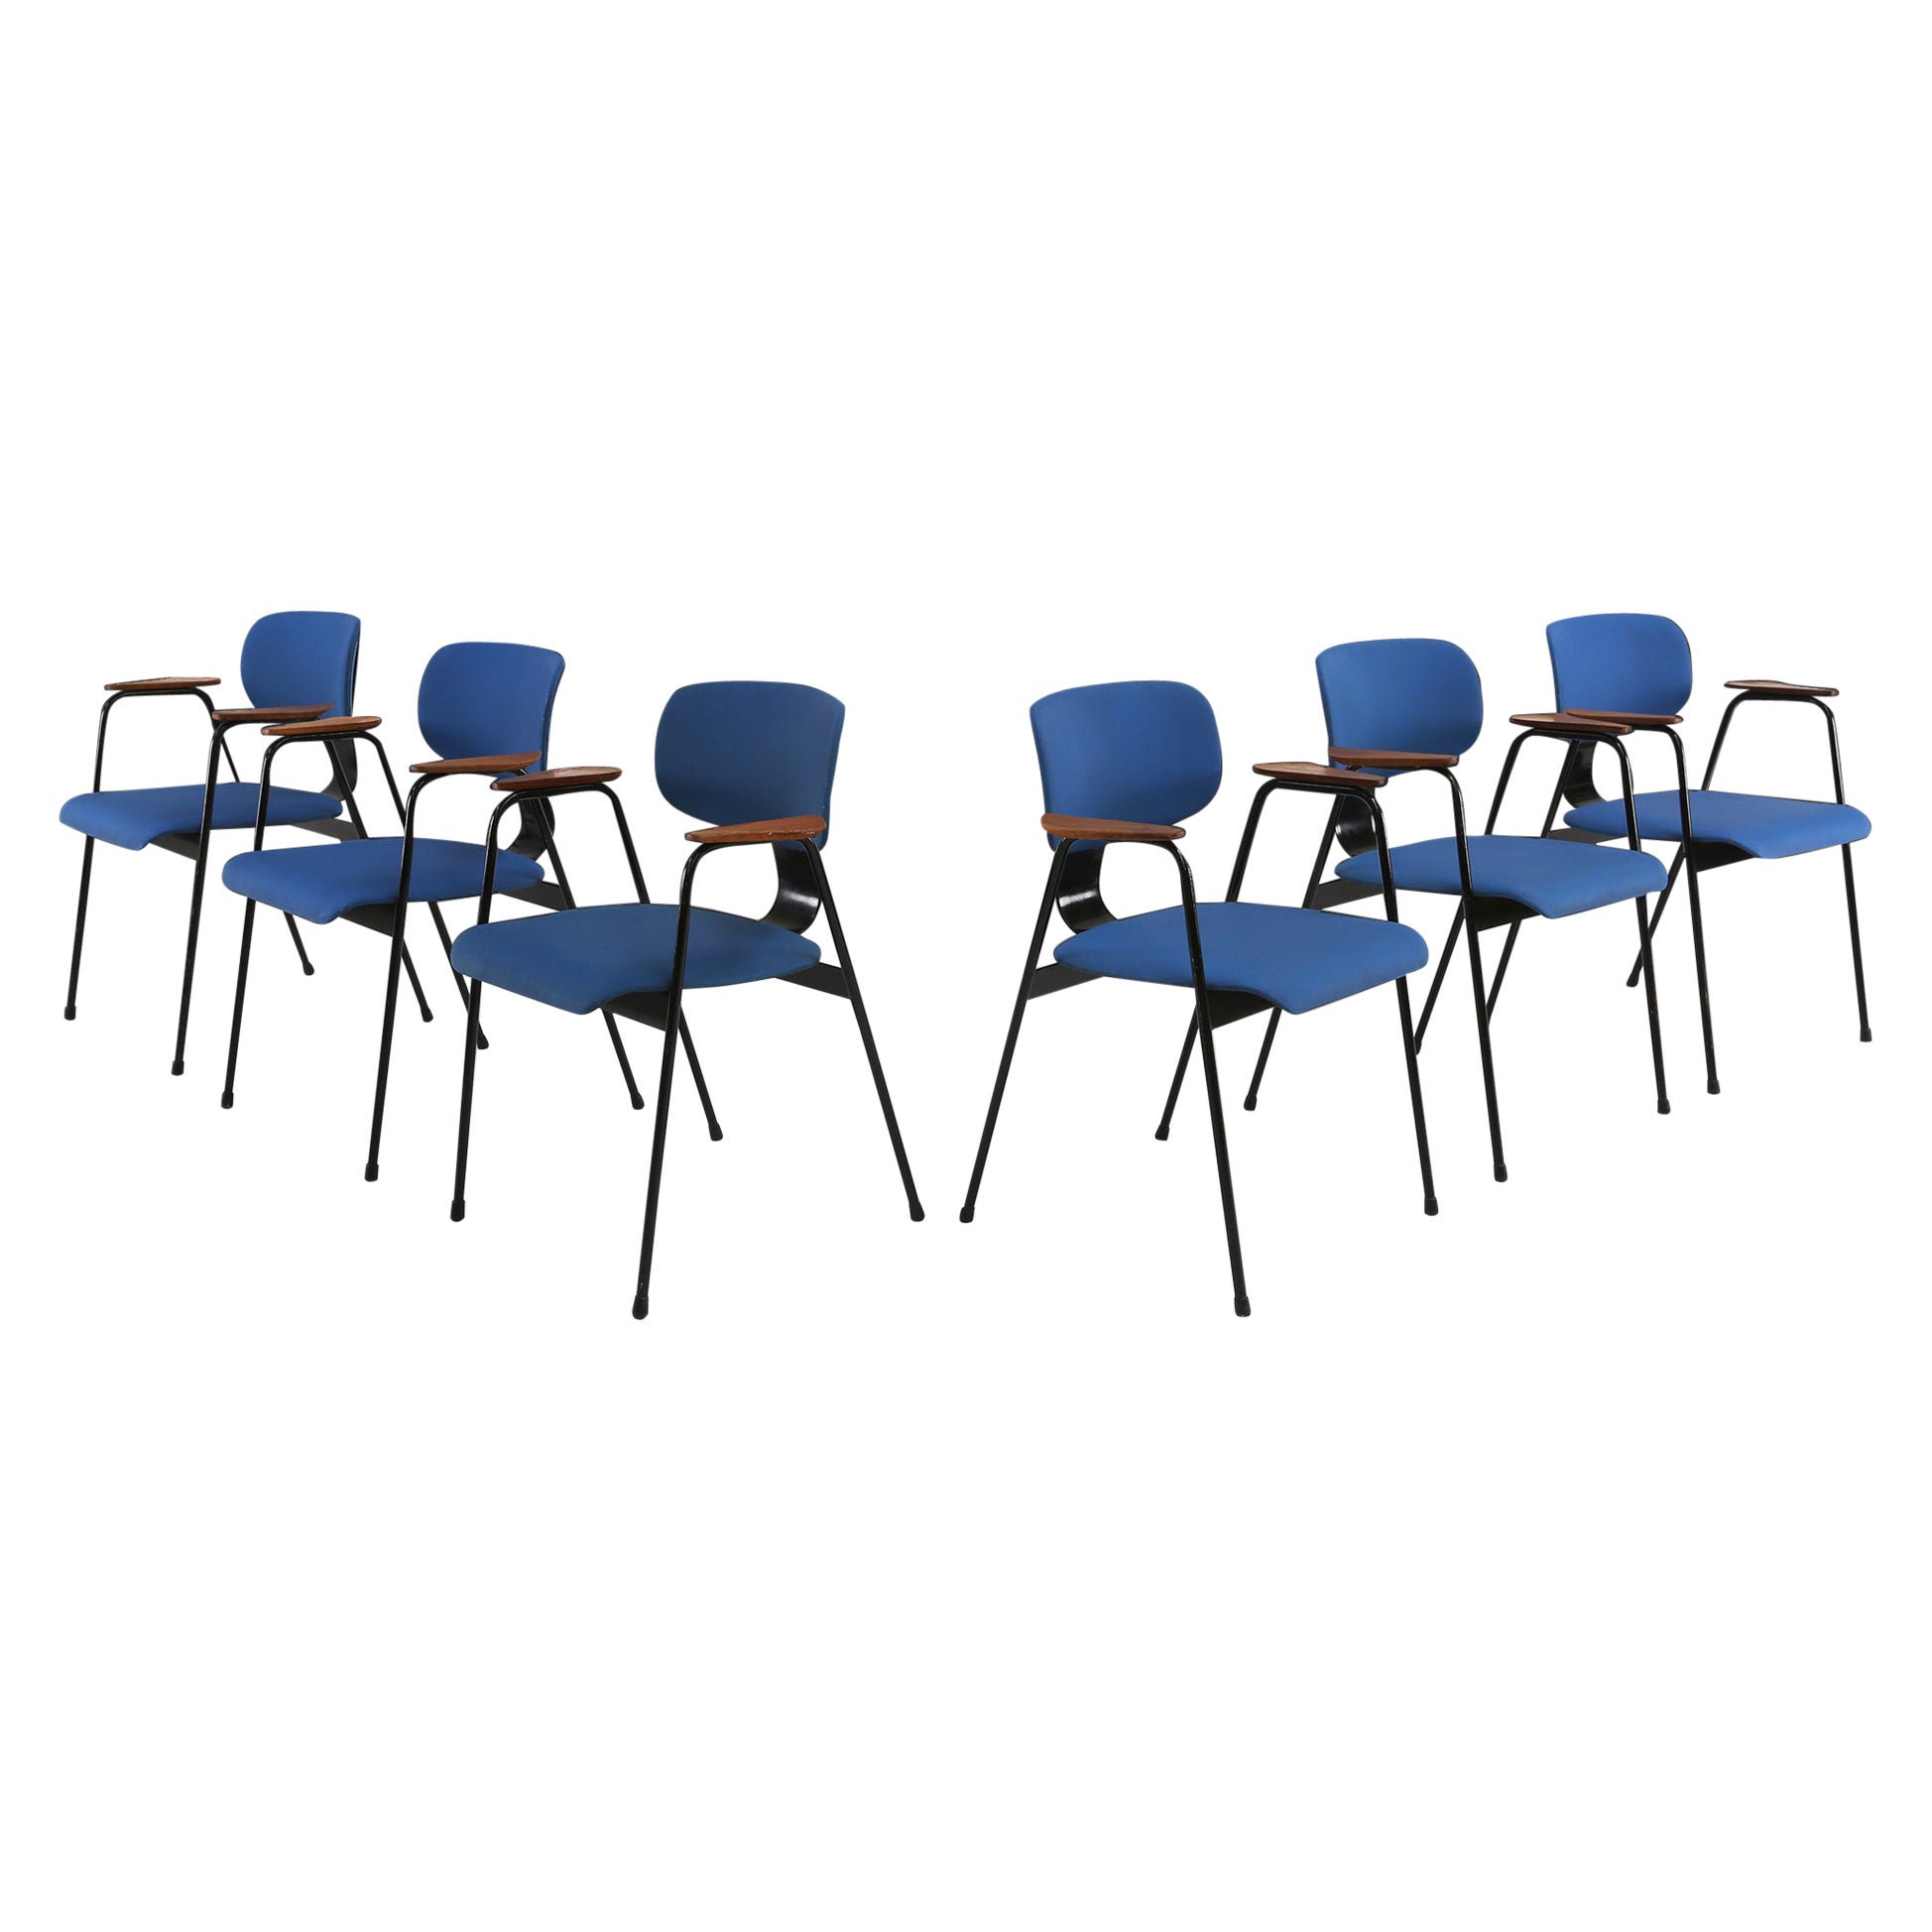 6 Chairs by Willy Van Der Meeren, 1950s For Sale